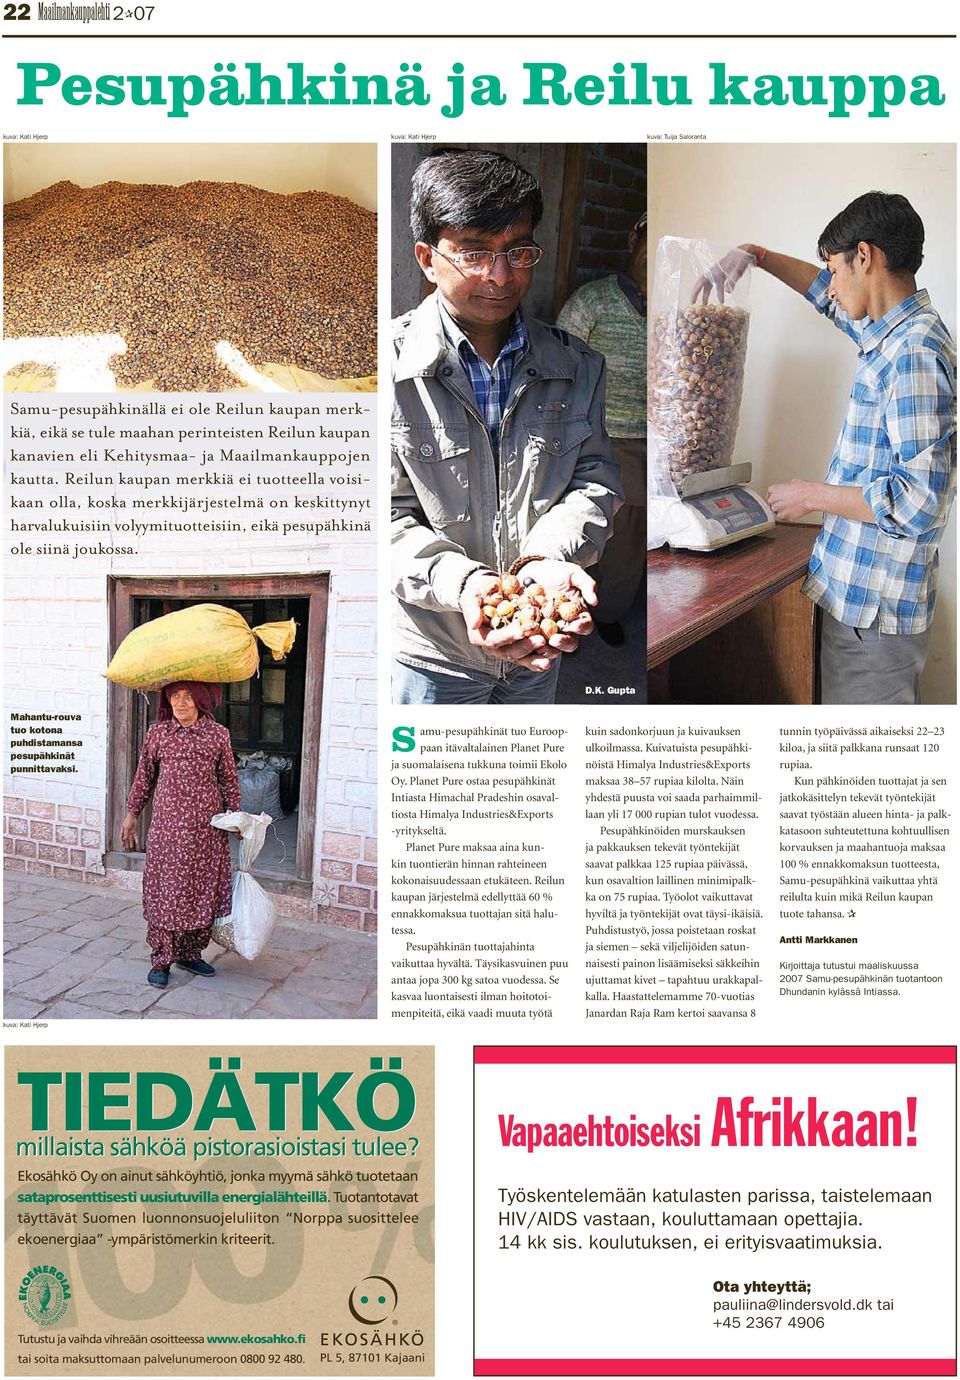 Gupta Mahantu-rouva tuo kotona puhdistamansa pesupähkinät punnittavaksi. Samu-pesupähkinät tuo Eurooppaan itävaltalainen Planet Pure ja suomalaisena tukkuna toimii Ekolo Oy.